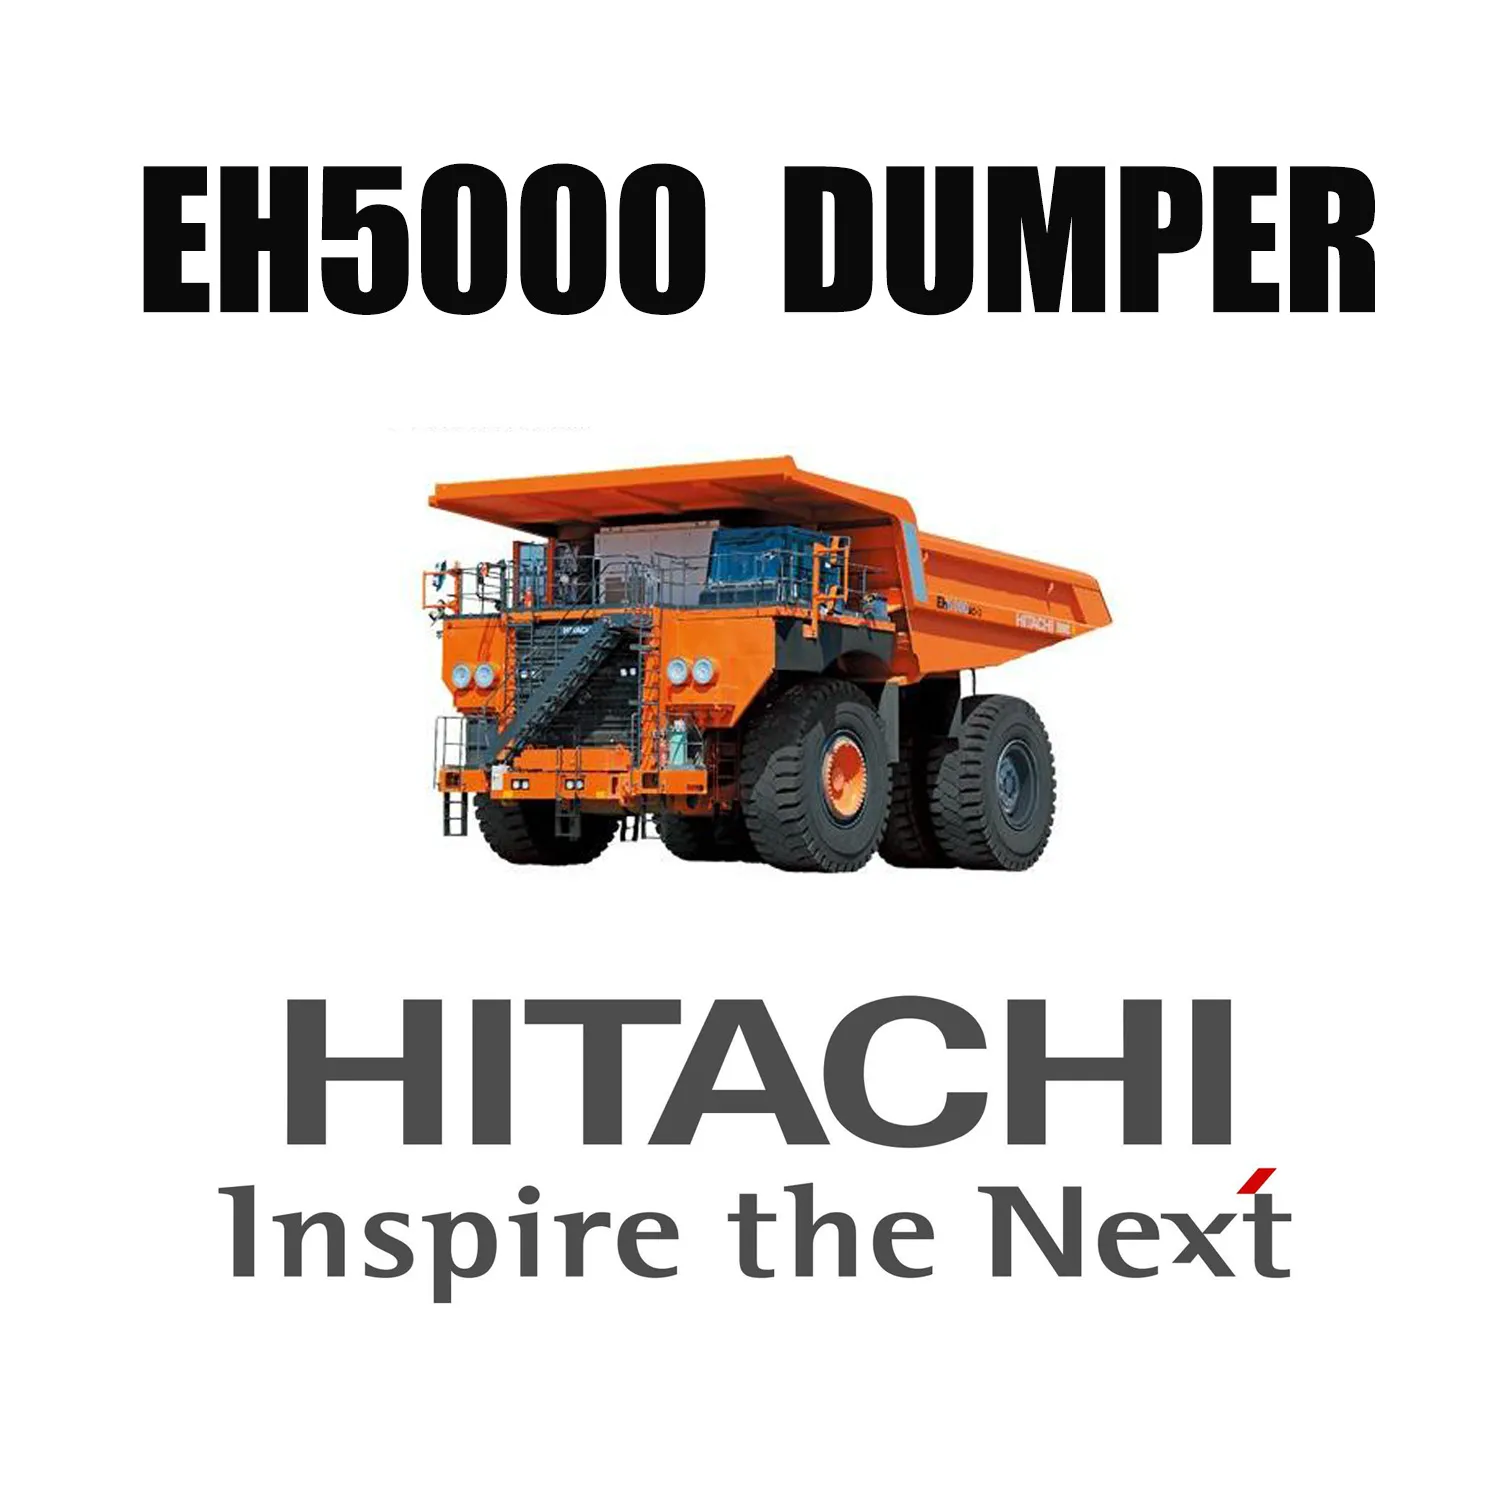 Pneumatici Giant Mining OTR in mescola resistente al taglio 53/80R63 montati su HITACHI EH5000